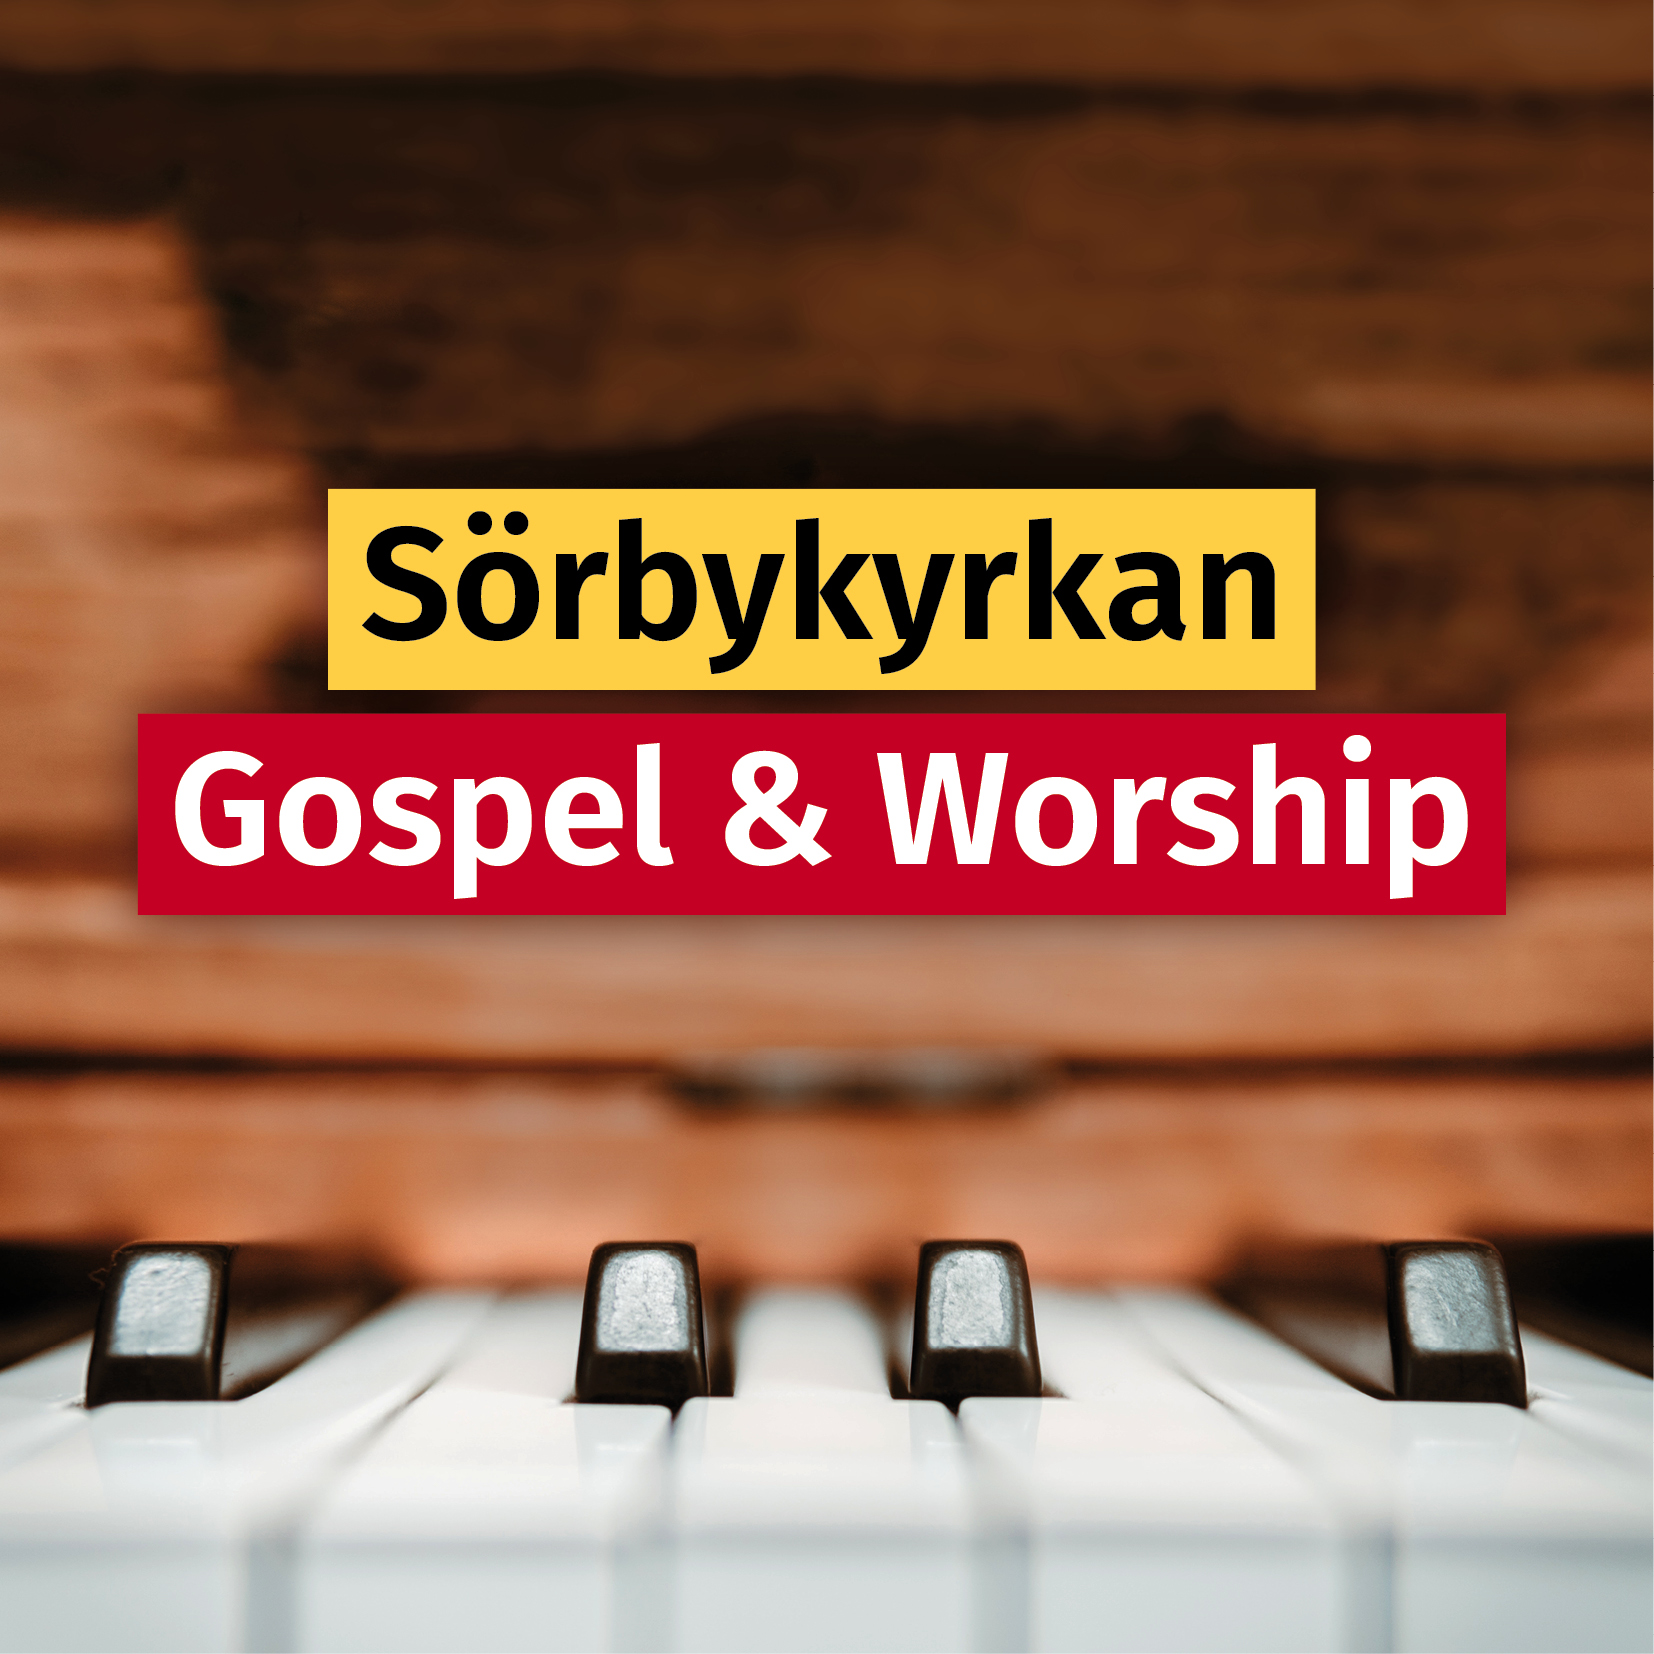 Närbild på piano och texten "Sörbykyrkan Gospel & Worship"